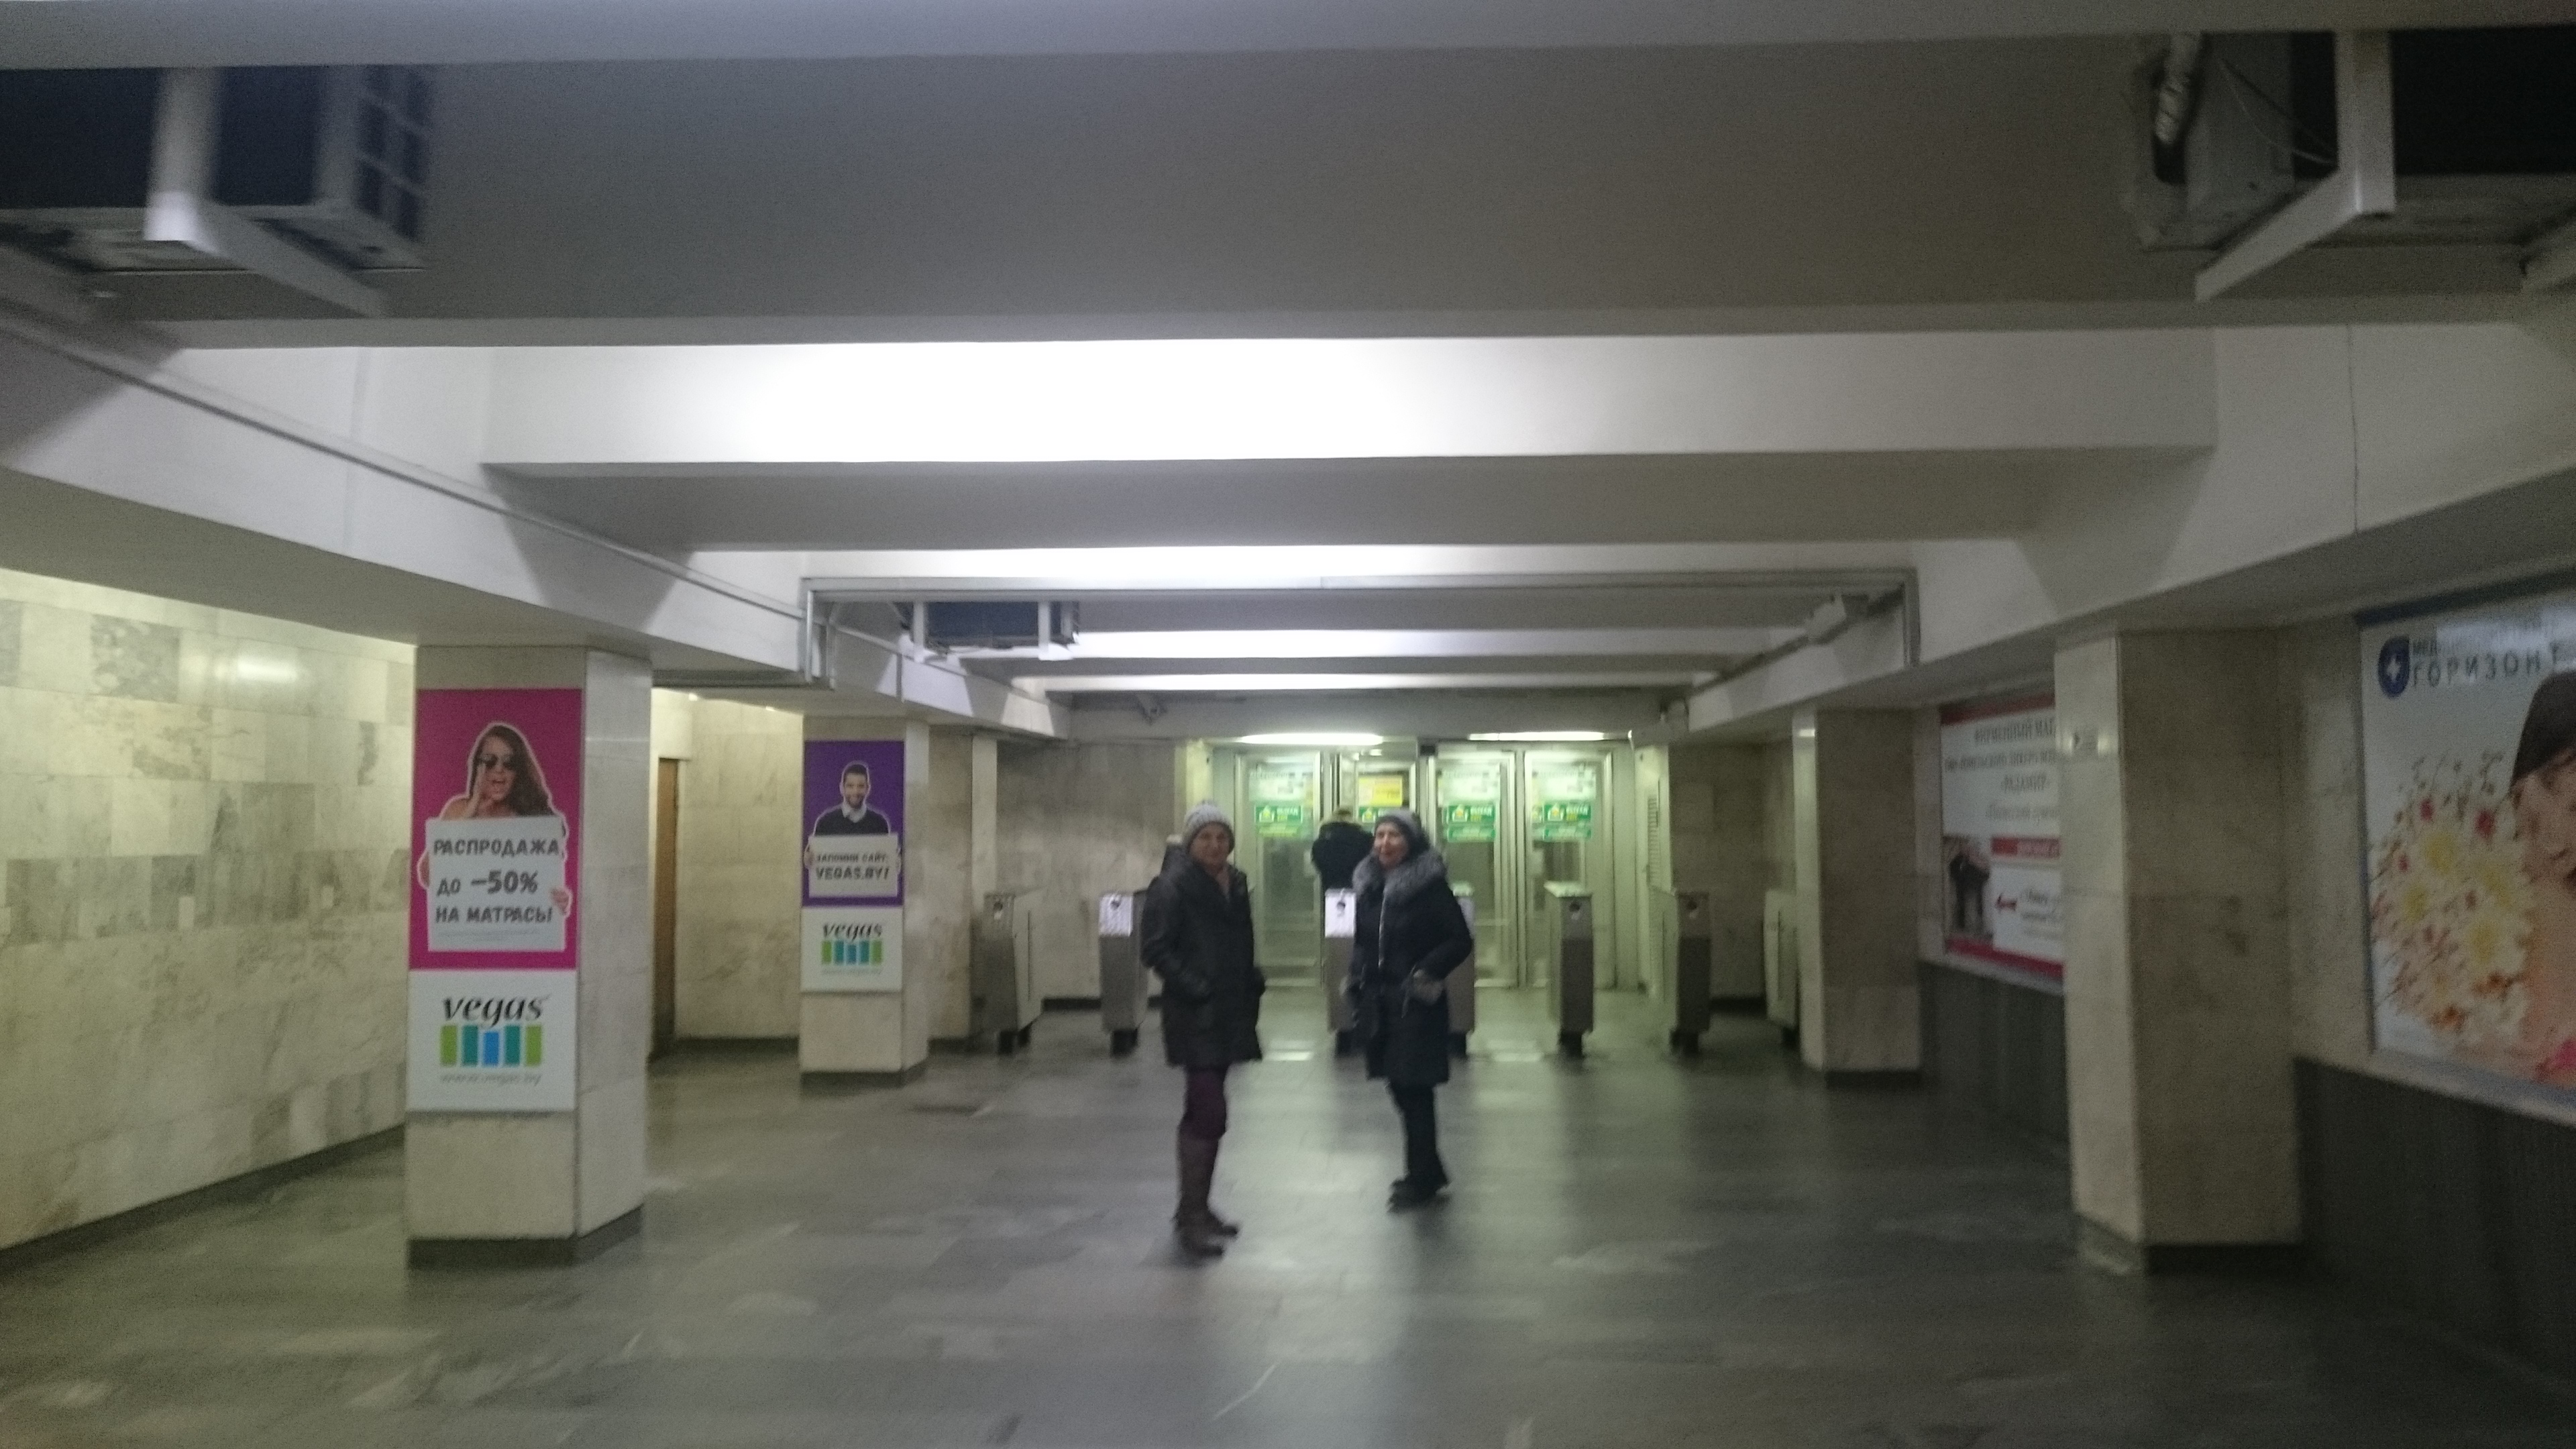 Подземные переходы, залы и магазины - характерная черта Минска